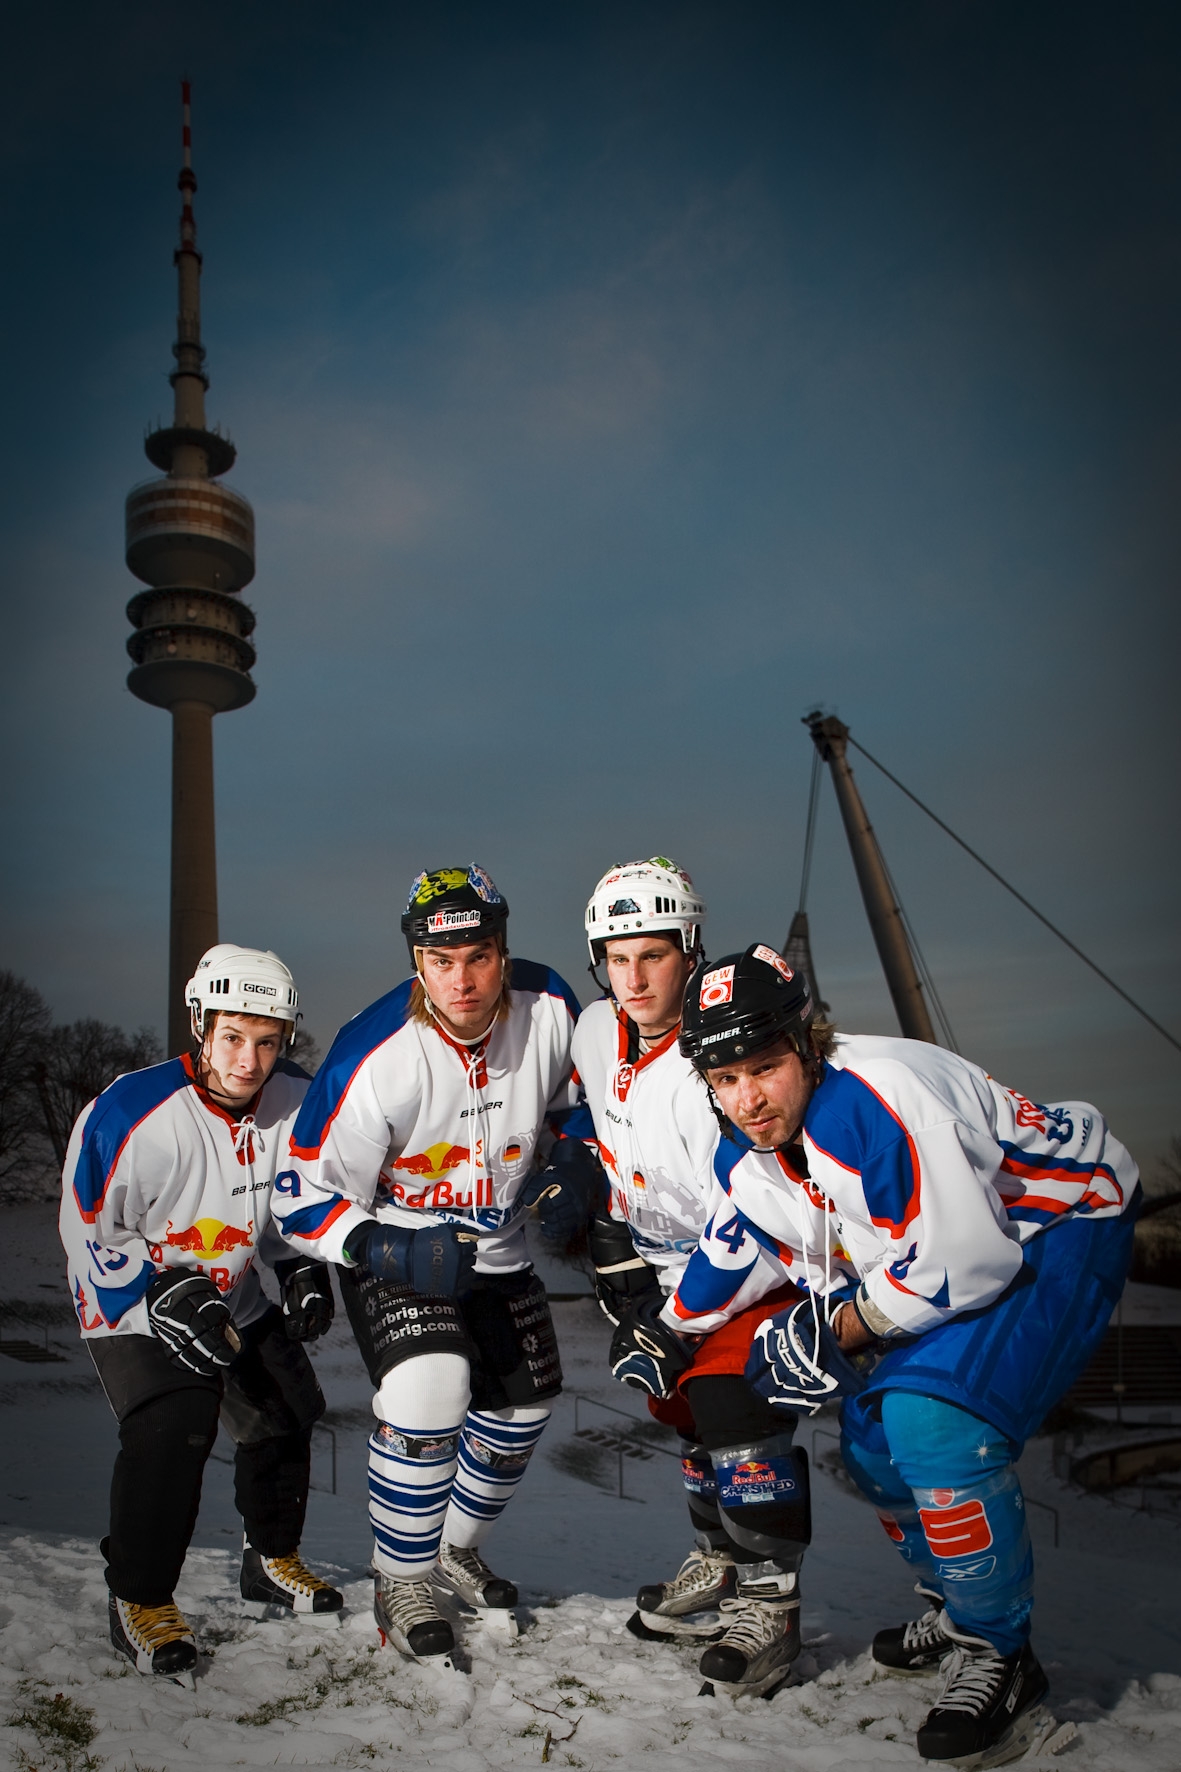 Abgefahren - der Red Bull Crashed Ice Qualifier in München